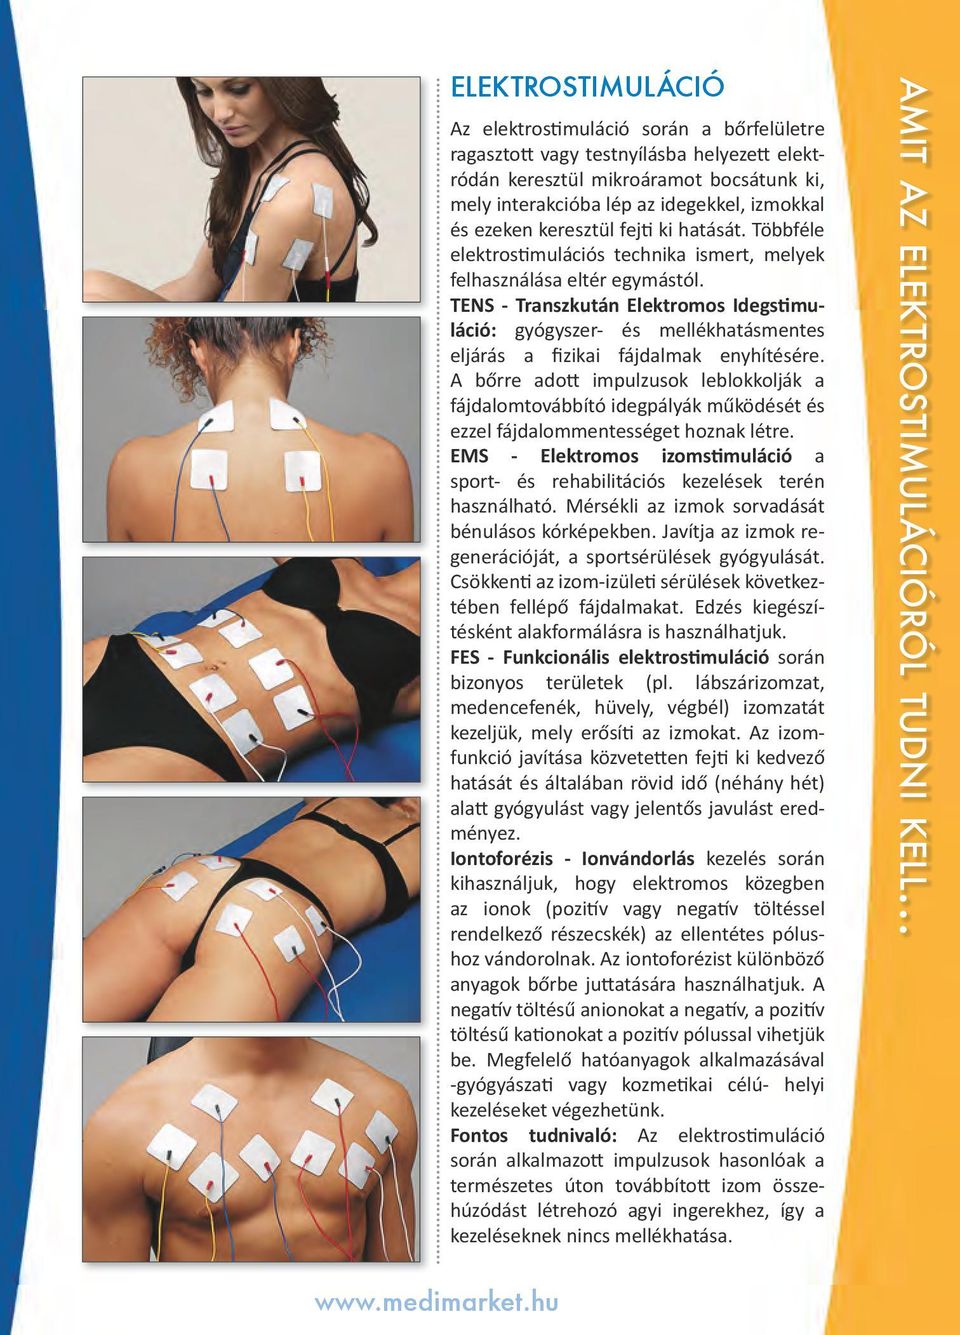 TENS - Transzkután Elektromos Idegstimuláció: gyógyszer- és mellékhatásmentes eljárás a fizikai fájdalmak enyhítésére.